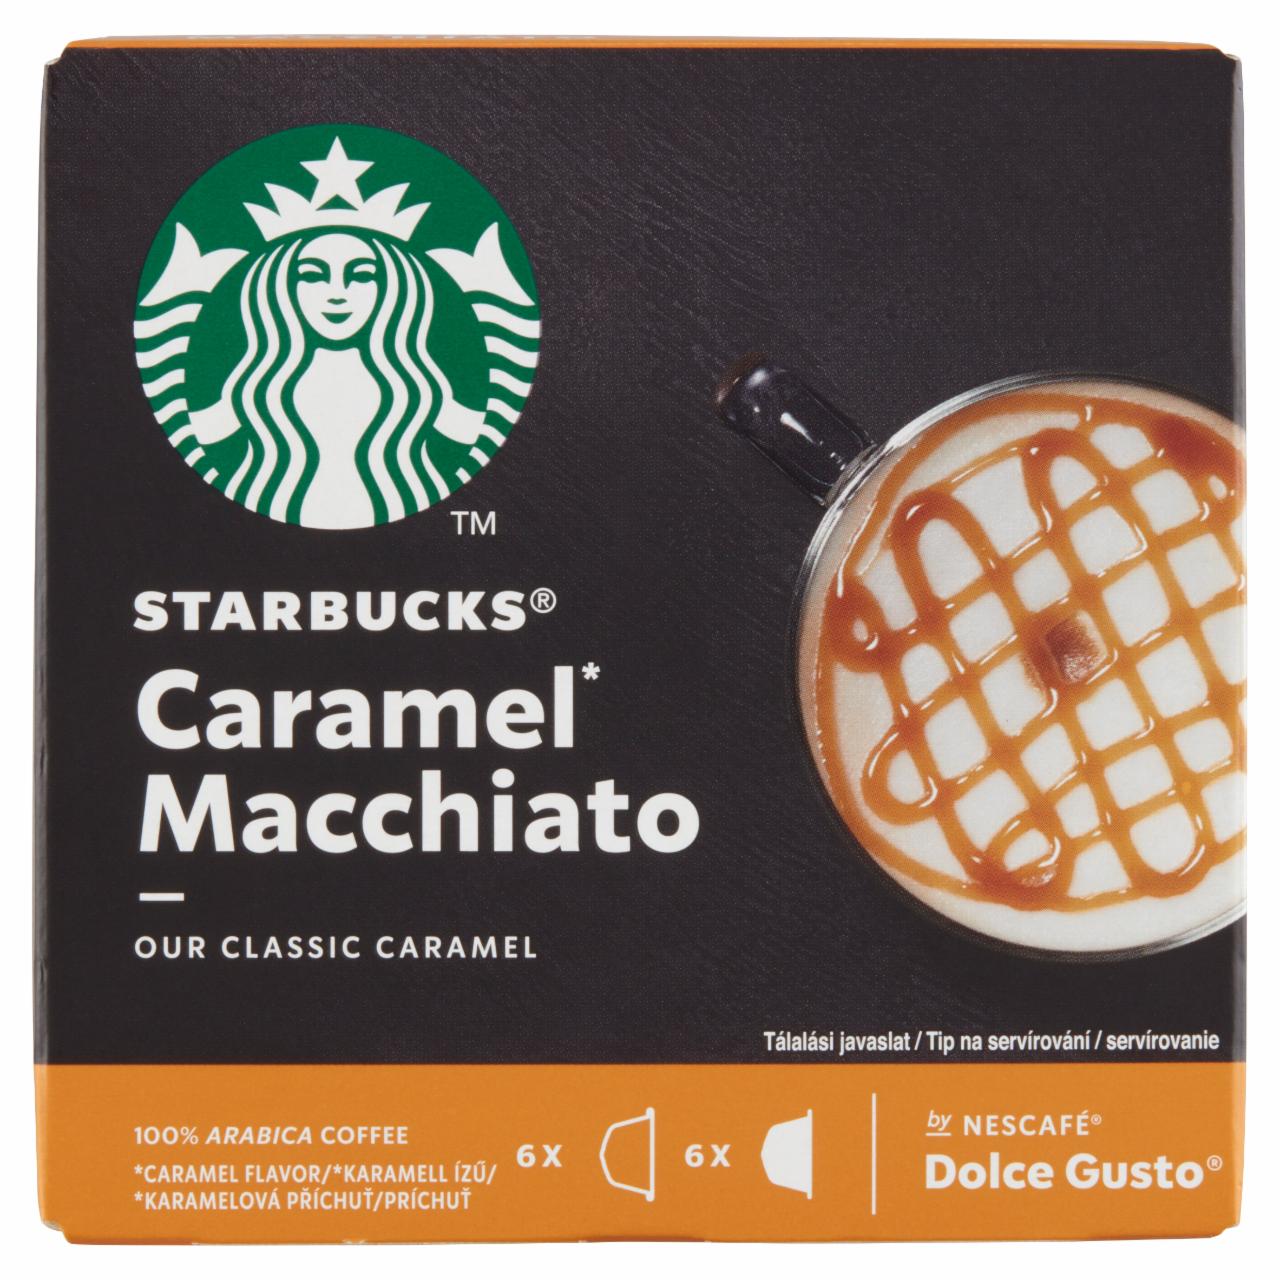 Képek - Starbucks by NESCAFÉ Dolce Gusto Caramel Macchiato tej- és kávékapszula 12 db/6 csésze 127,8 g